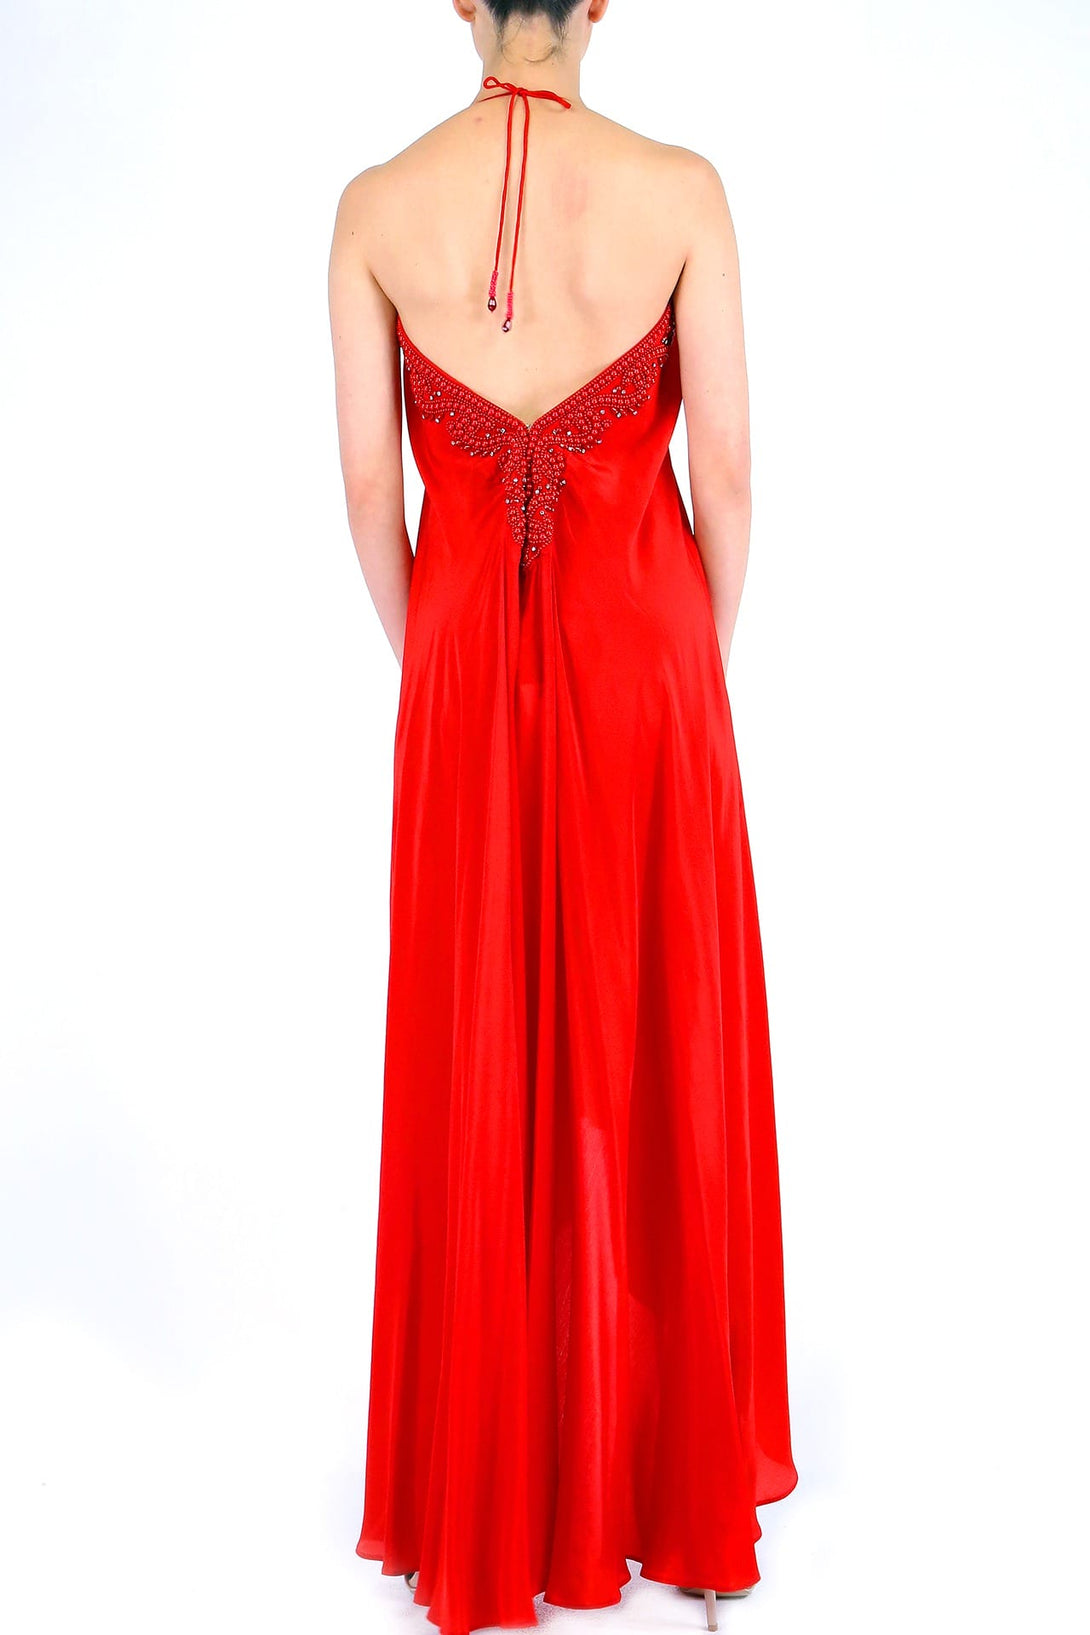  red designer dress, long summer dresses for women, plunge neck cocktail dress,